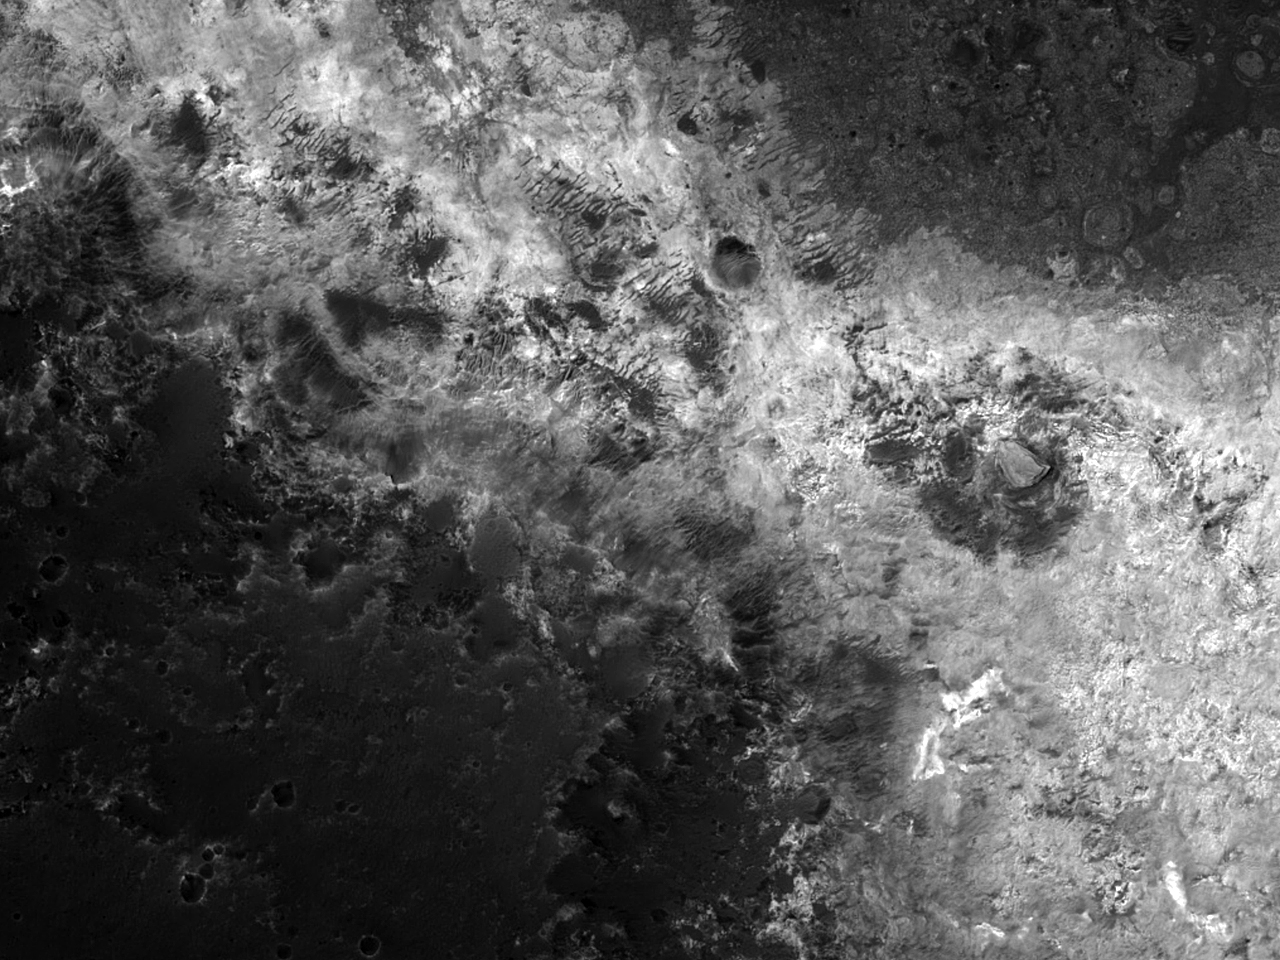 Eligendus ad futuram Martis explorationem peragendam ExoMars appellatam aptus situs in Mawrth Valle